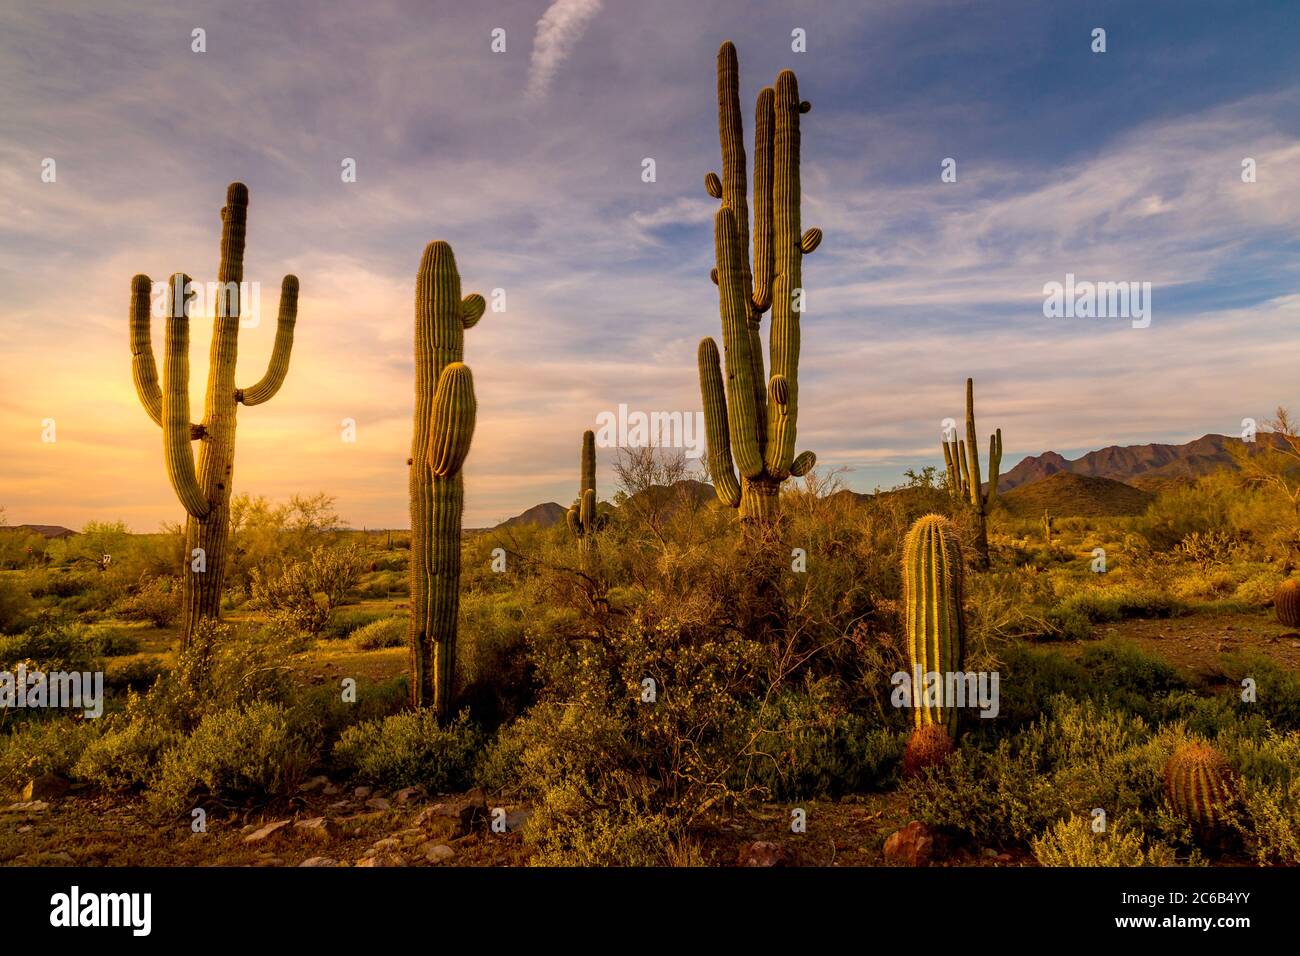 Cacti in the Arizona Desert at Sunset Stock Photo